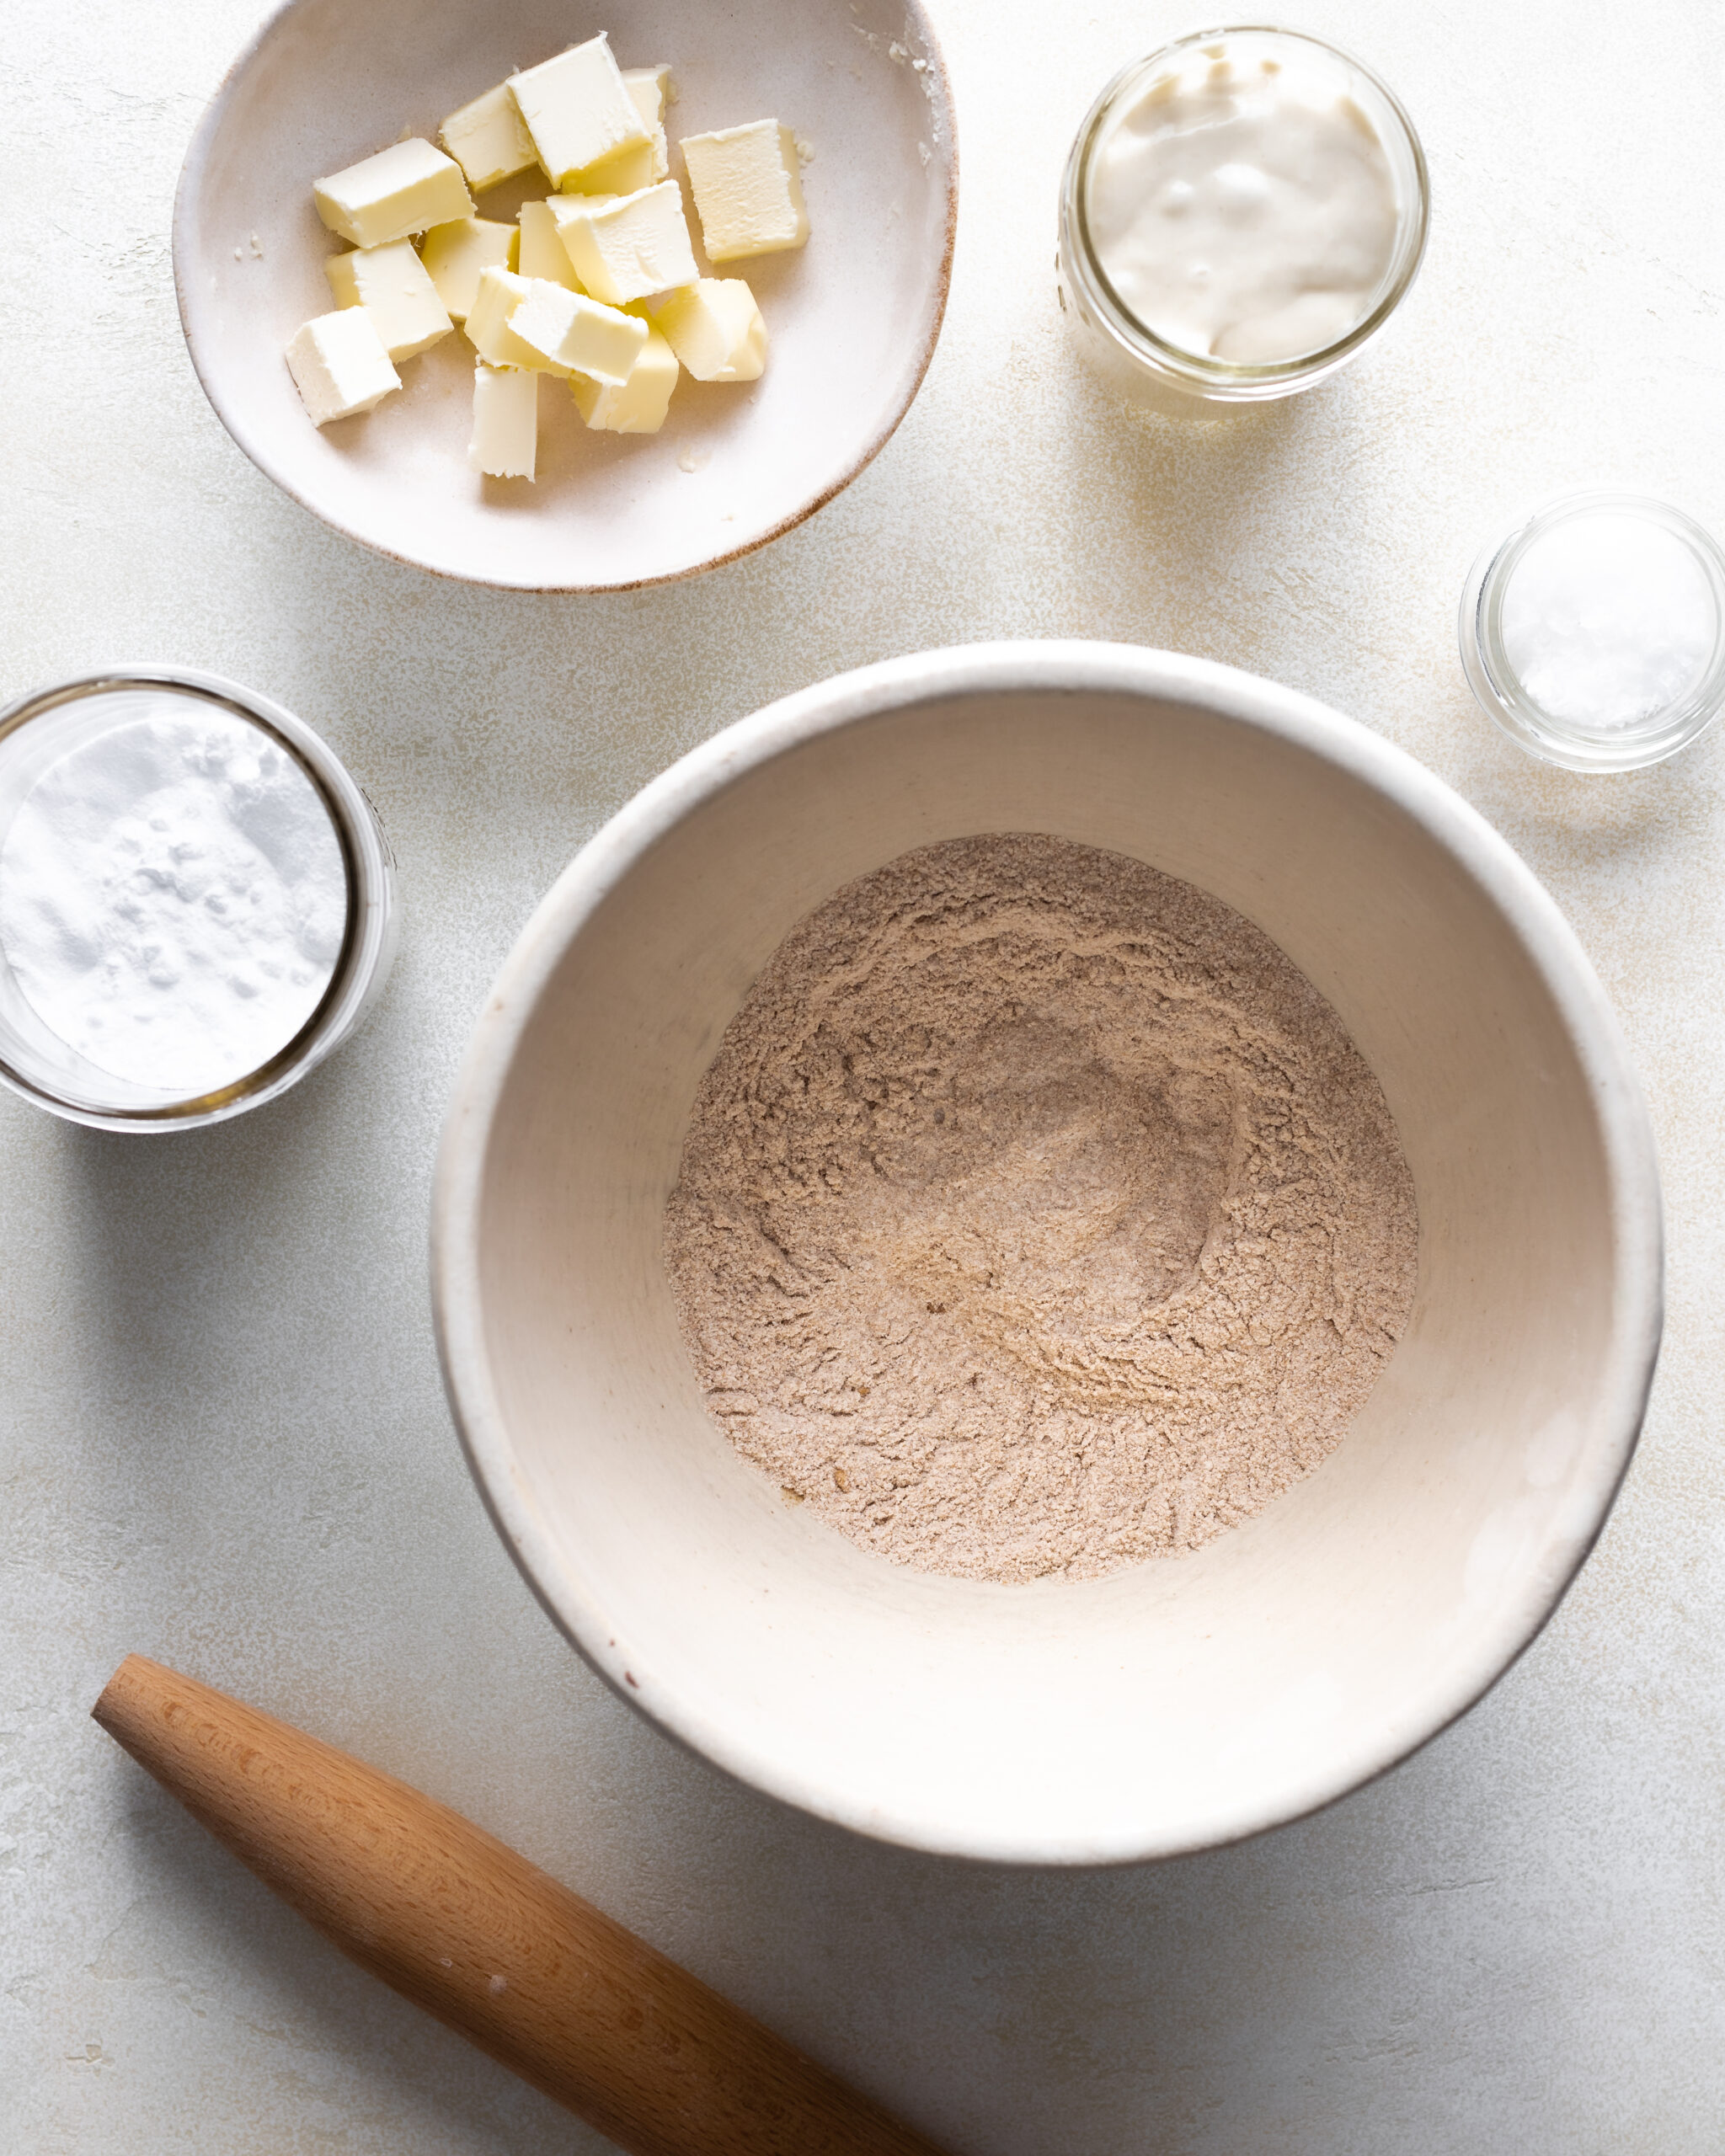 ingredients for sourdough crackers flour, baking powder, salt, sourdough discard